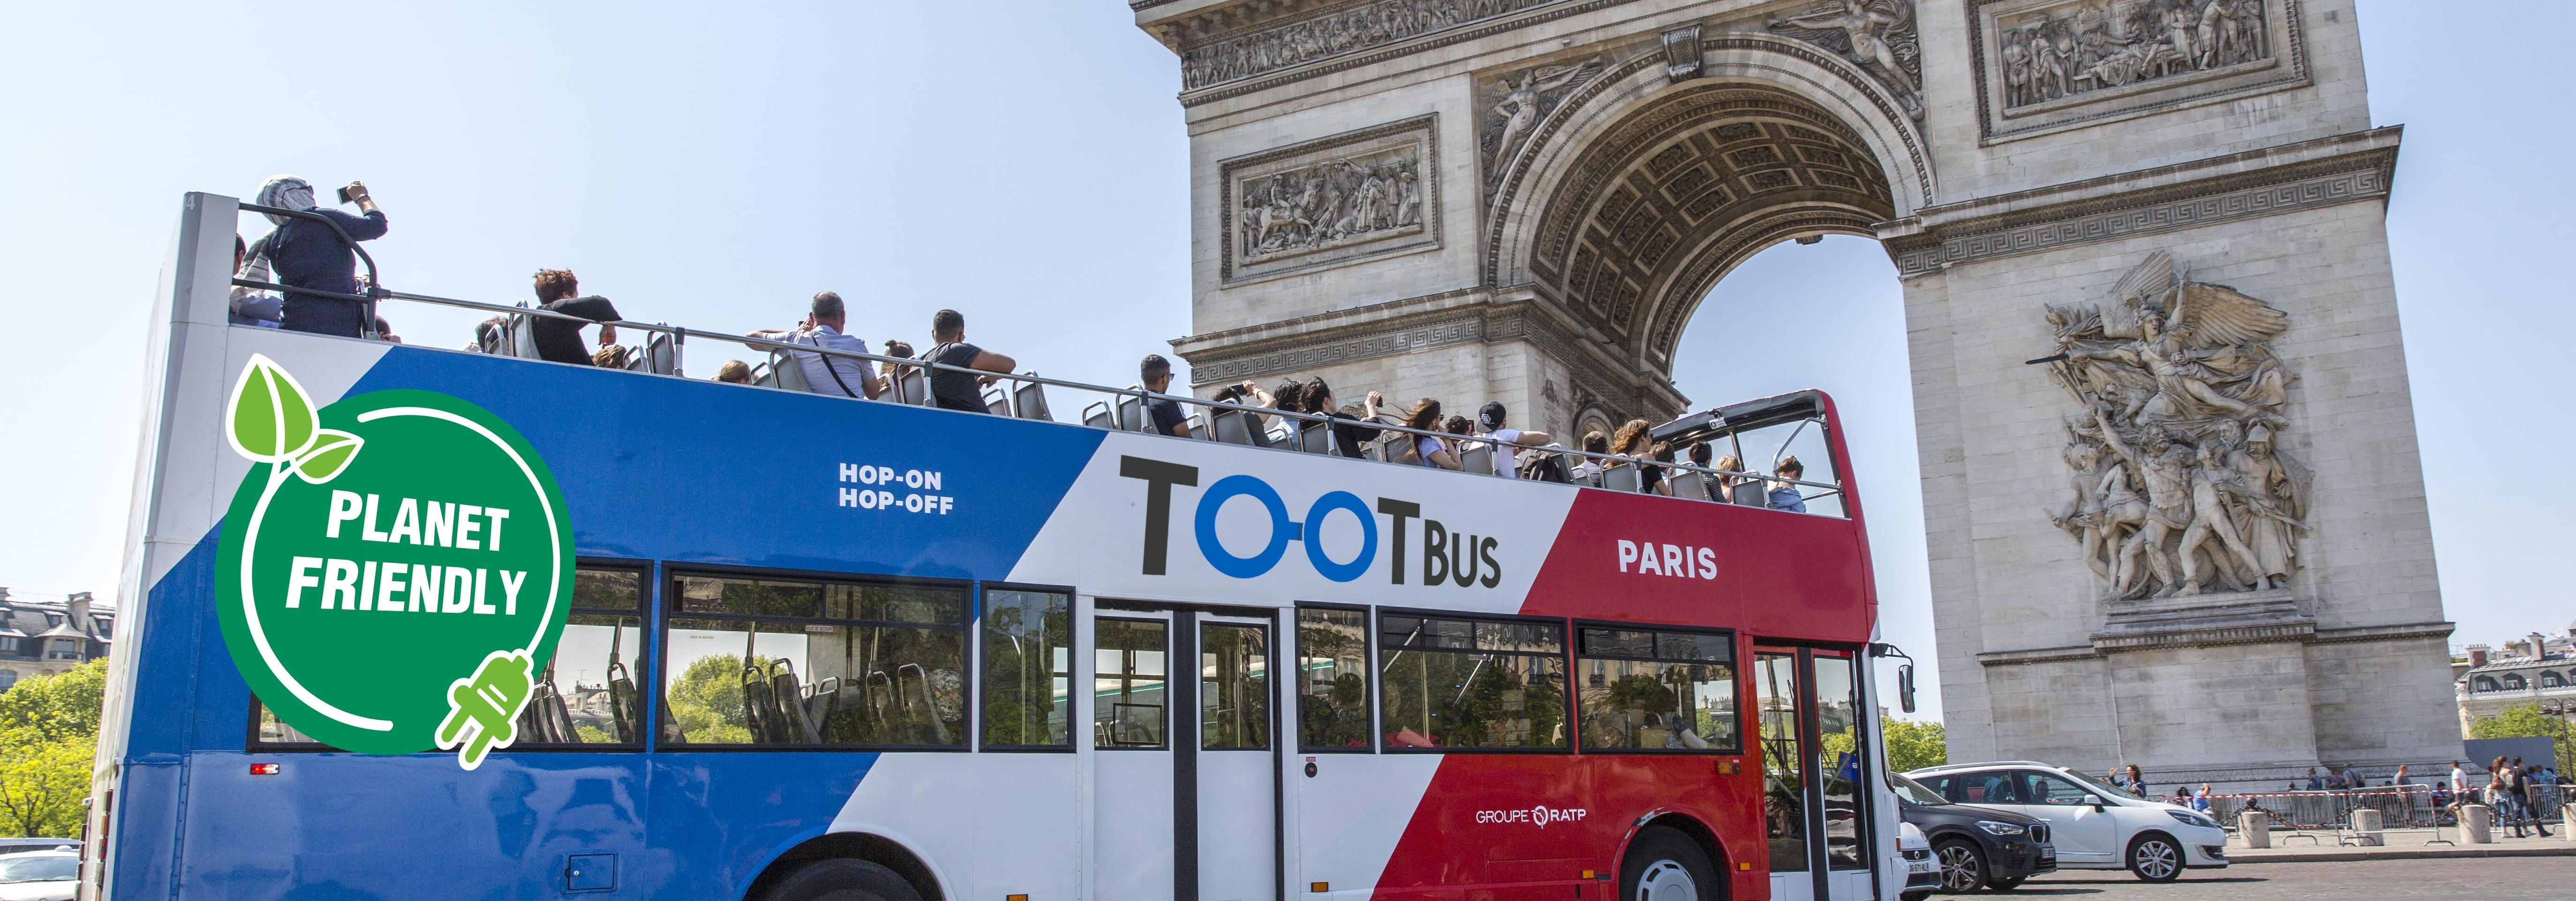 乘观光巴士游览巴黎 - 1日、2日、3日交通通票